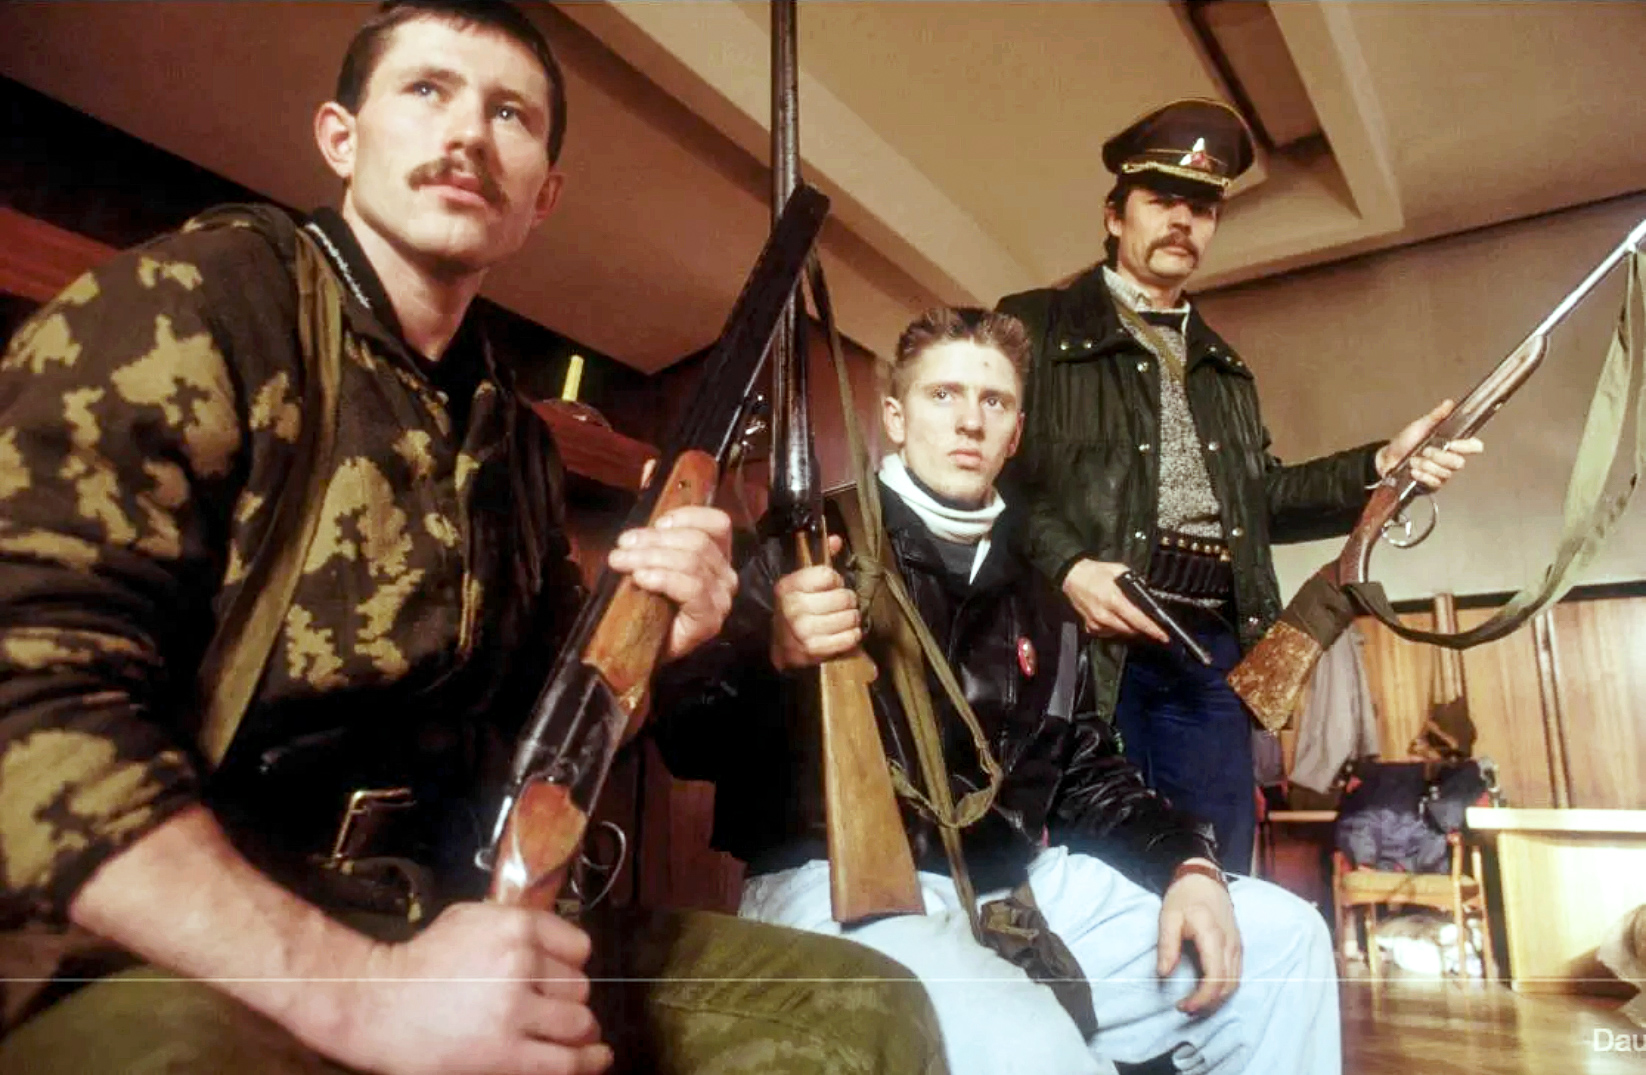 Литовские СМИ не любят публиковать вот такие фотографии «мирных» участников январских событий 1991 года